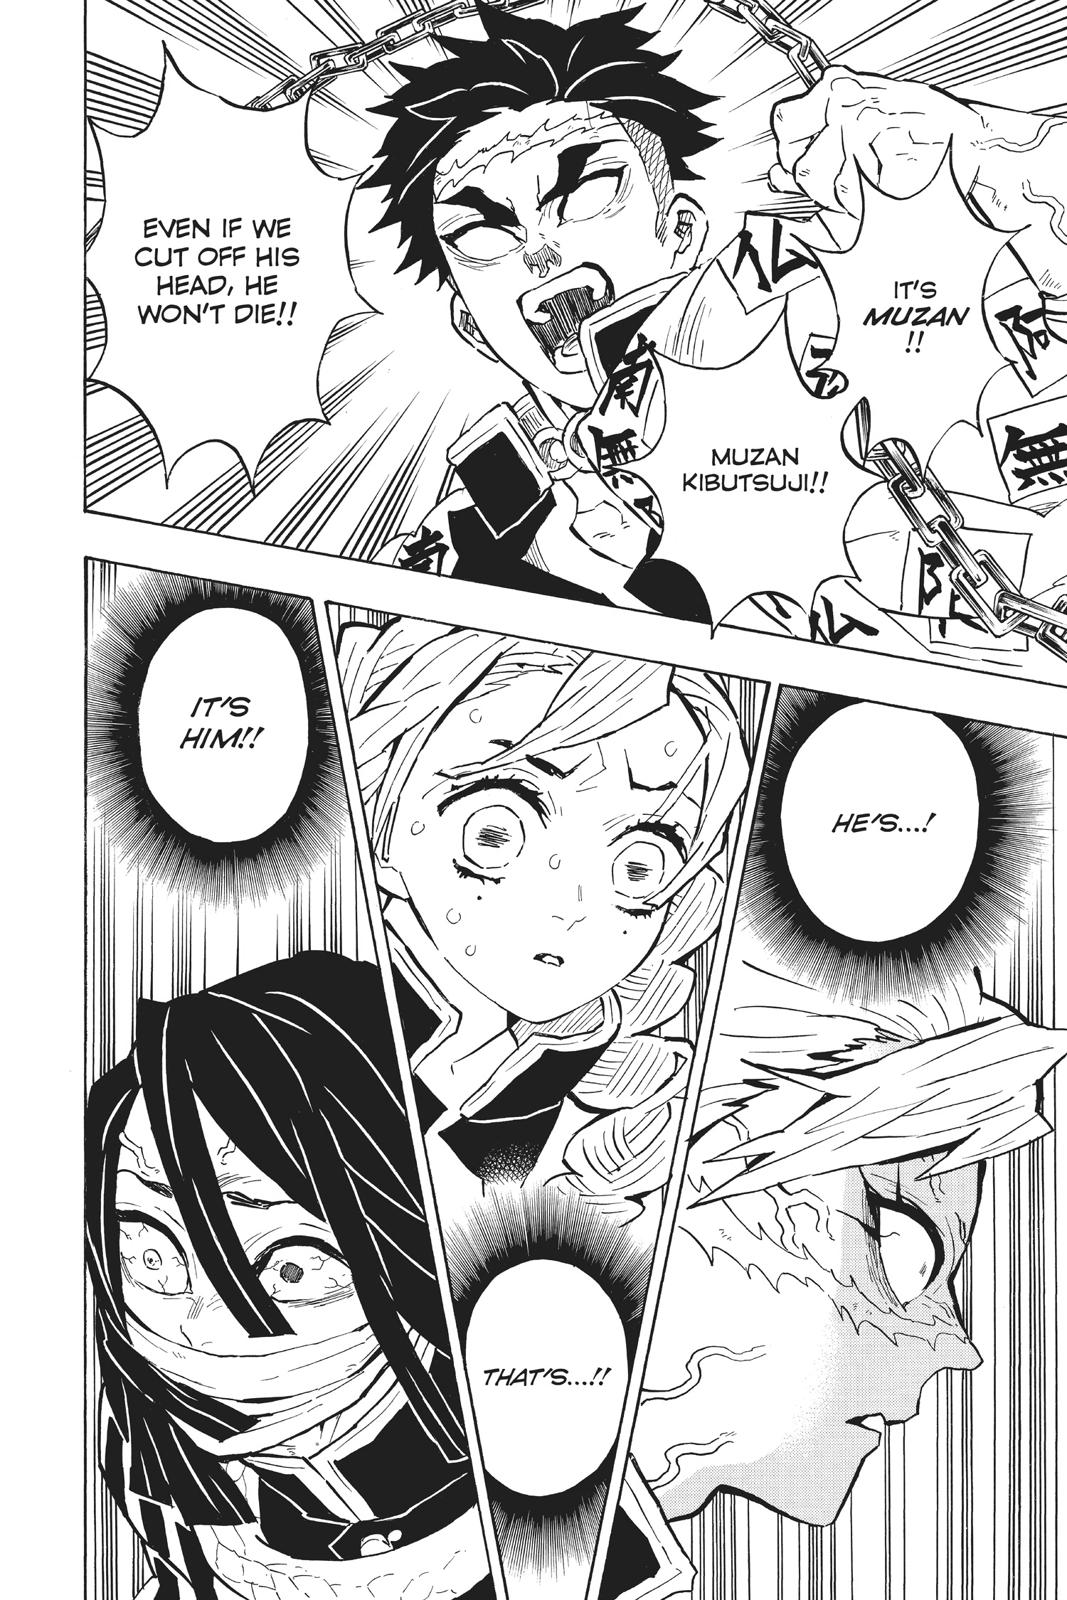 Demon Slayer Manga Manga Chapter - 139 - image 8